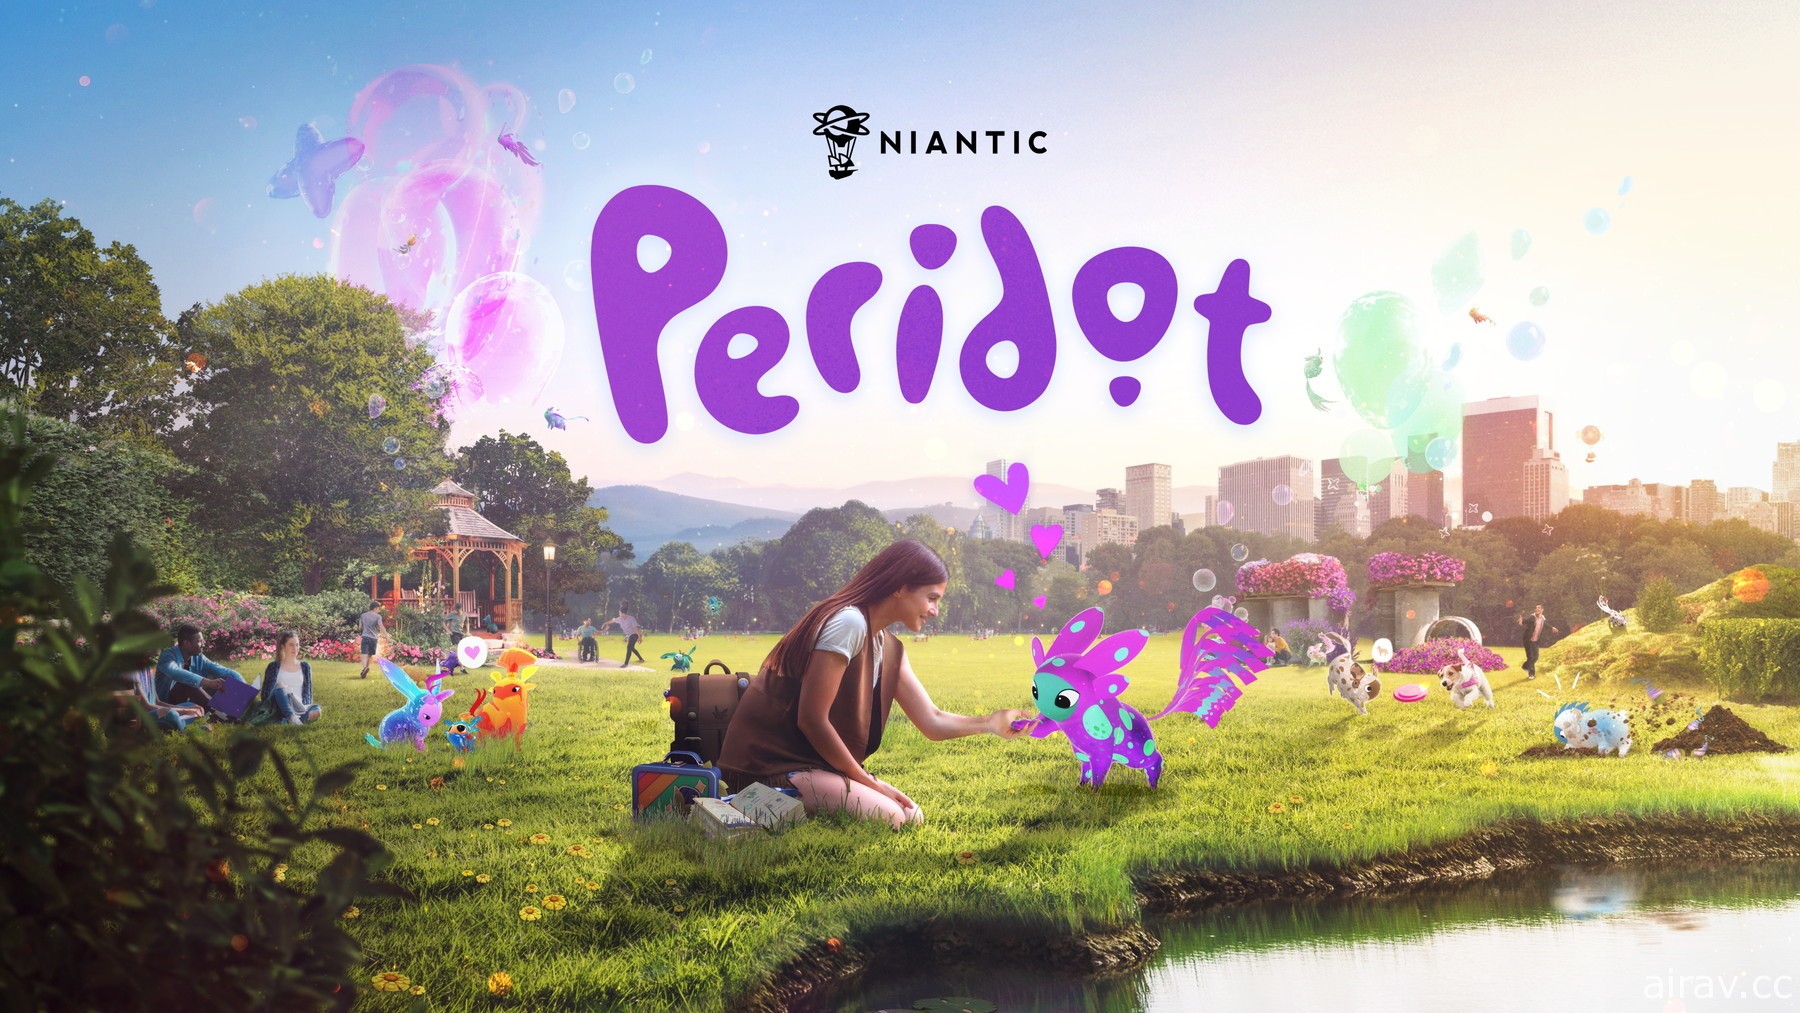 《Pokemon Go》开发商 Niantic 新作《Peridot》亮相 与可爱的虚拟宠物一起探索世界！